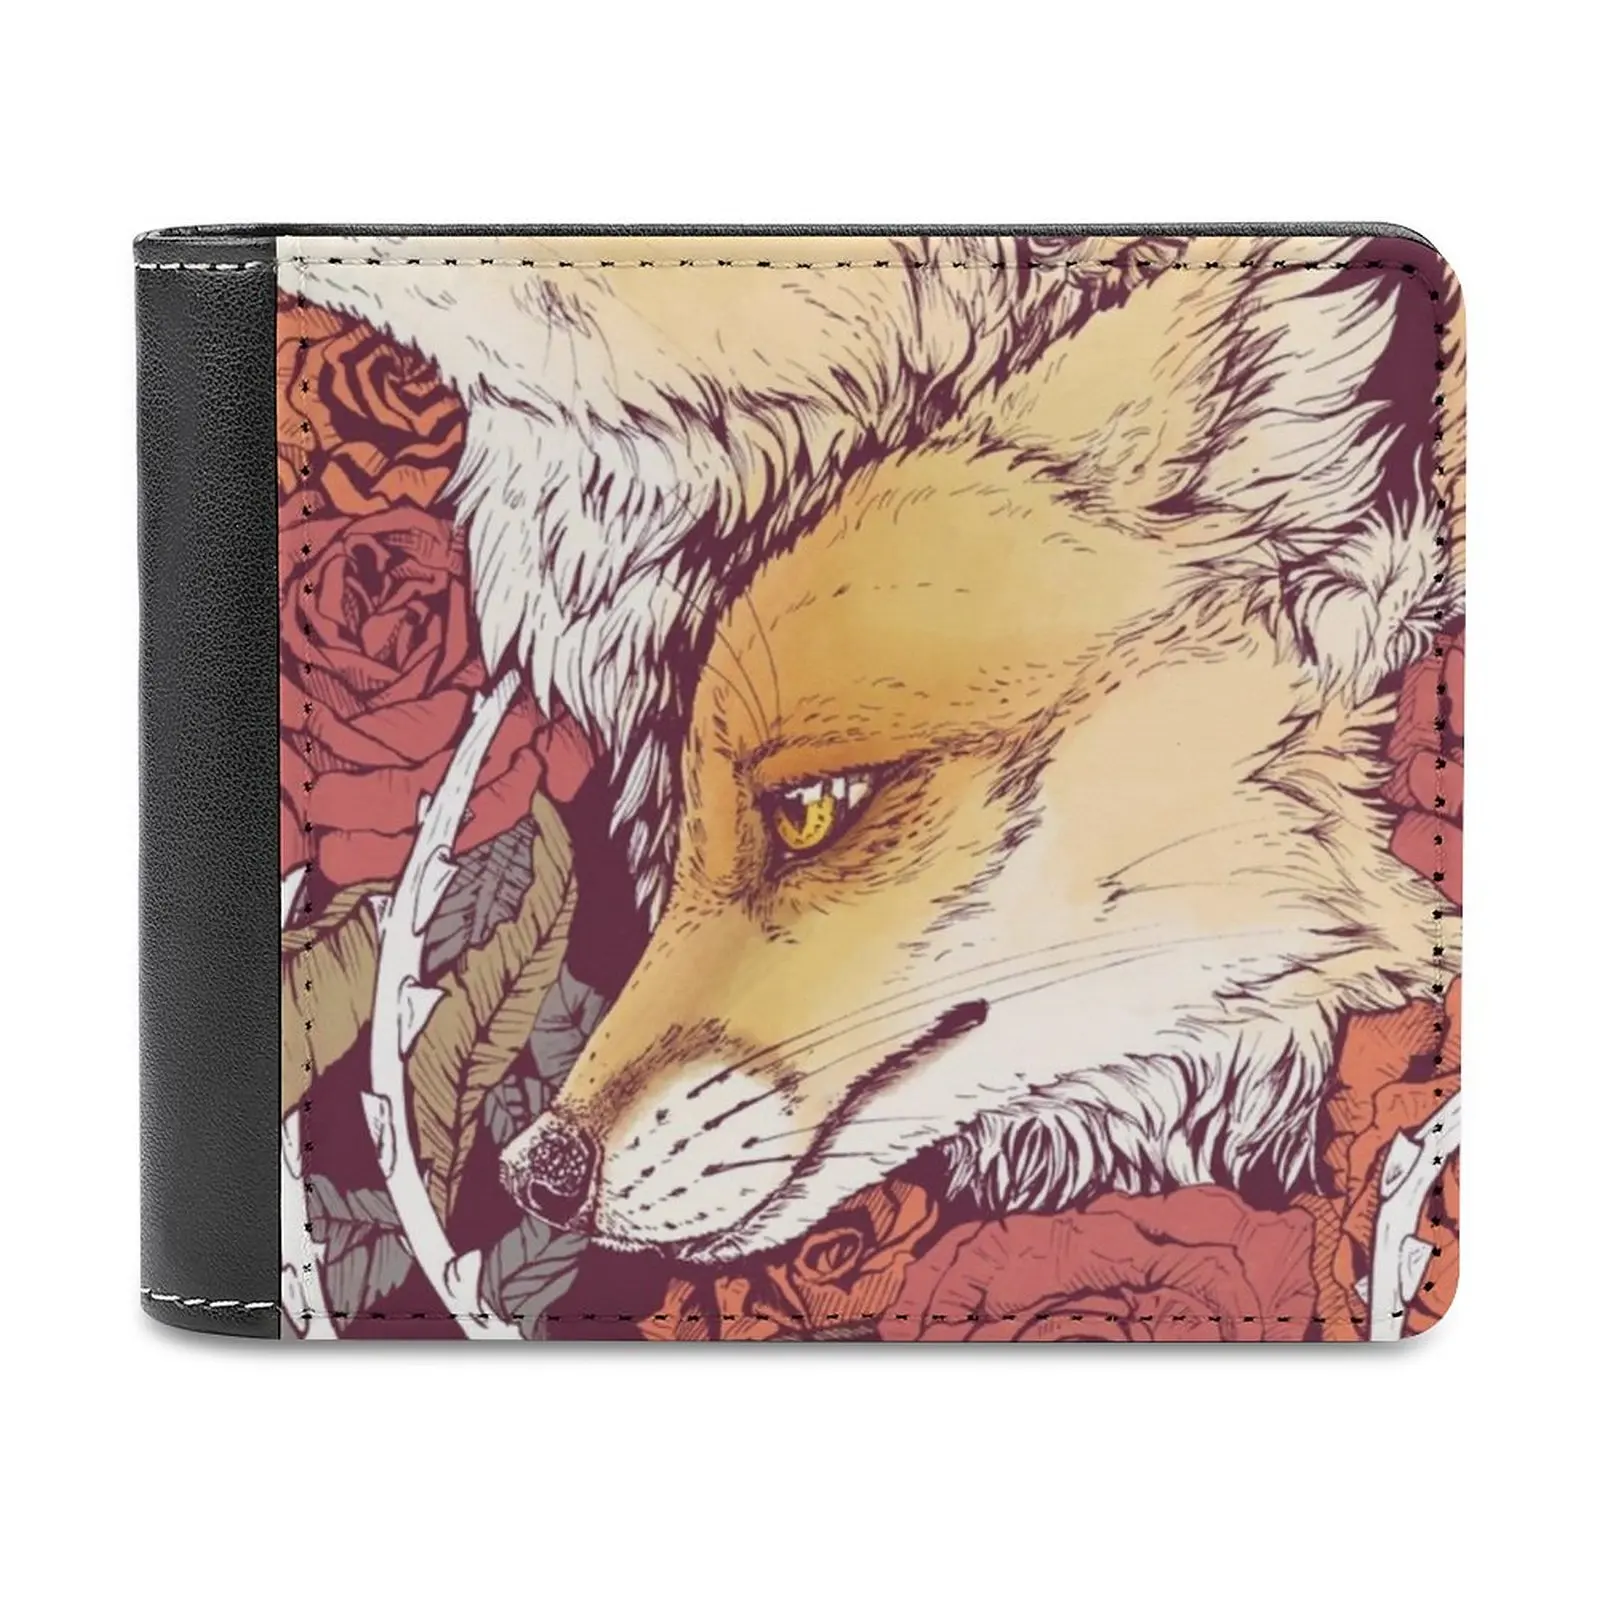 

Кожаный бумажник Red Fox Bloom, мужской бумажник, персонализированный кошелек «сделай сам», подарок на день отдыха, красные лисы, розы, лисы, красн...